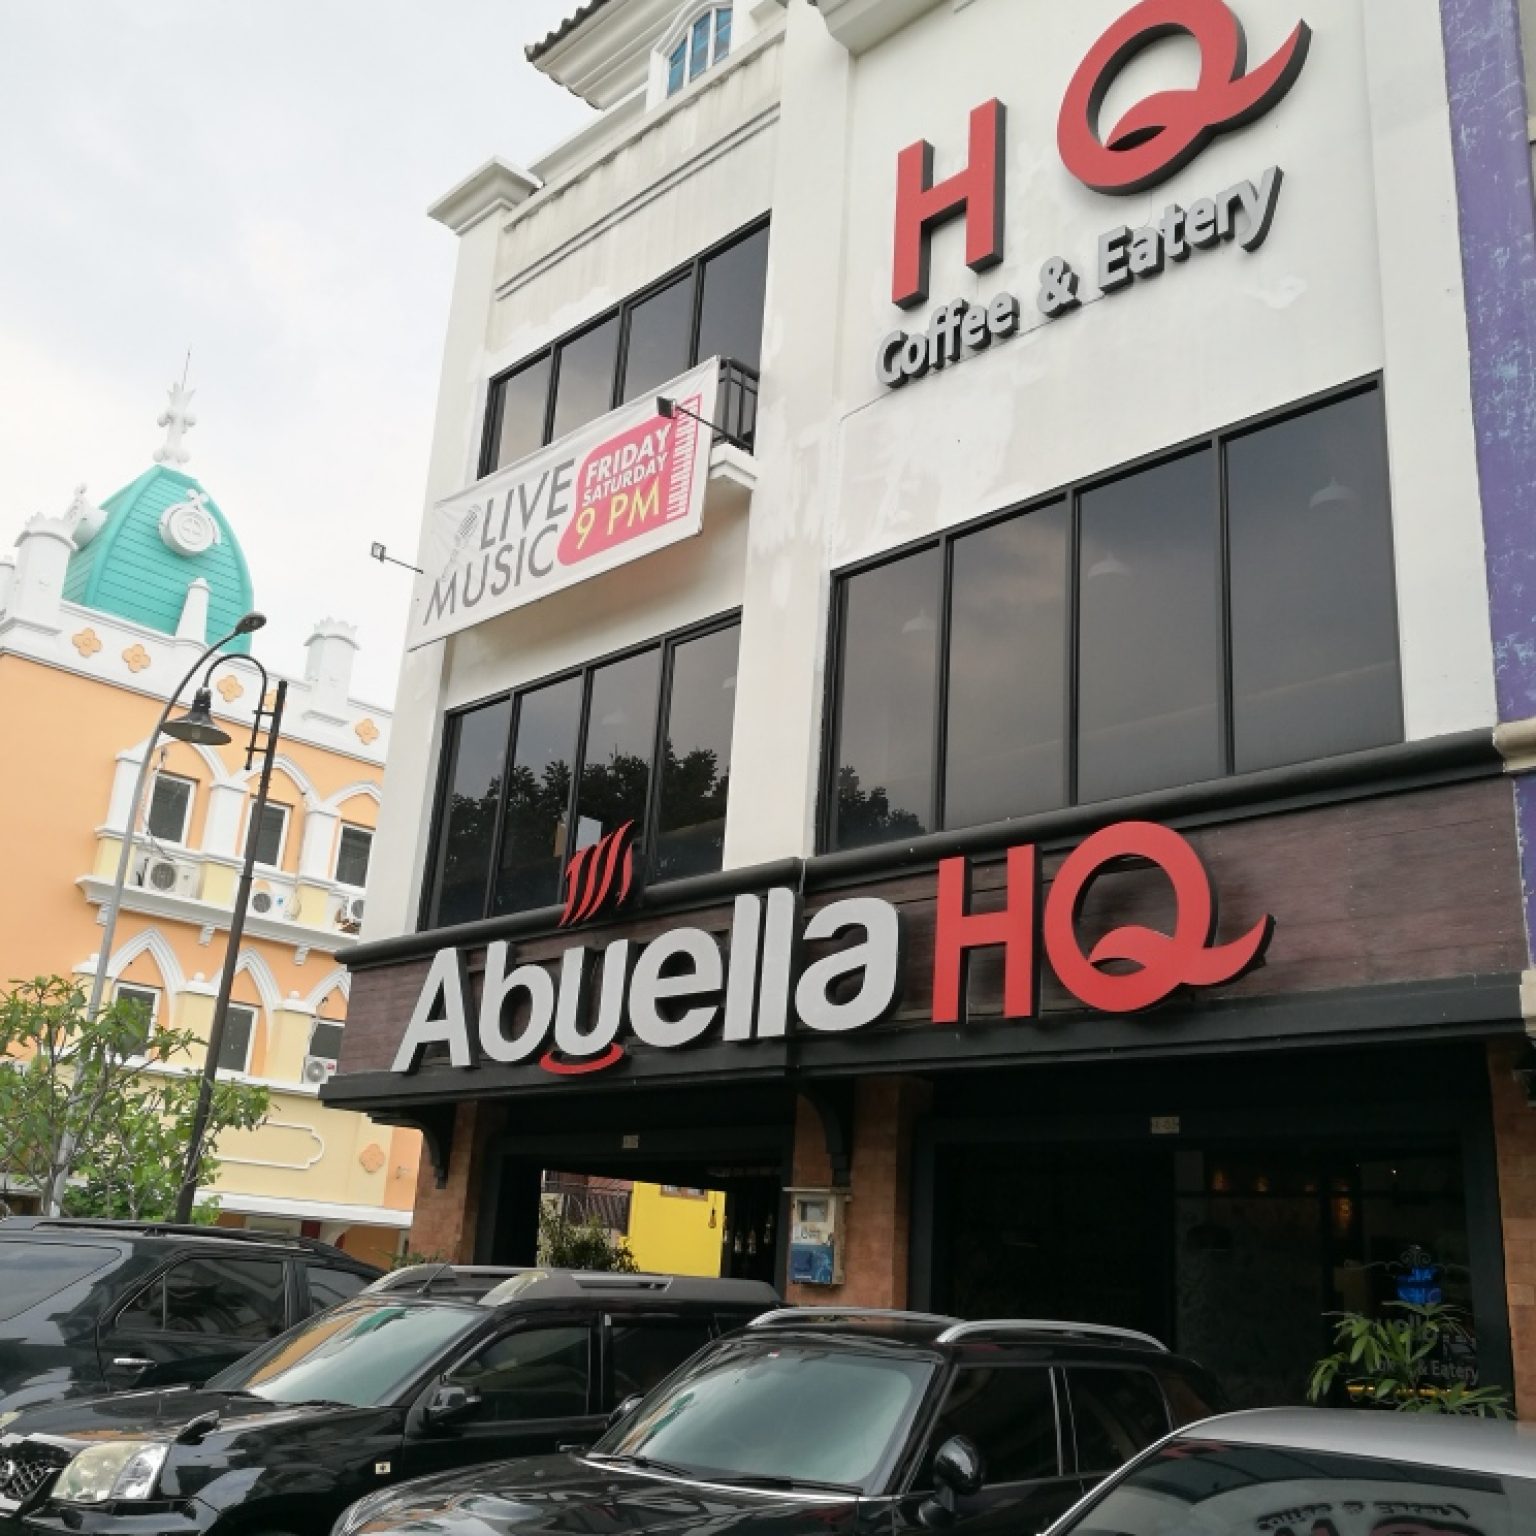 6 Daftar Restoran Sehat Yang Ada di Tangerang Selatan, Cek Disini!